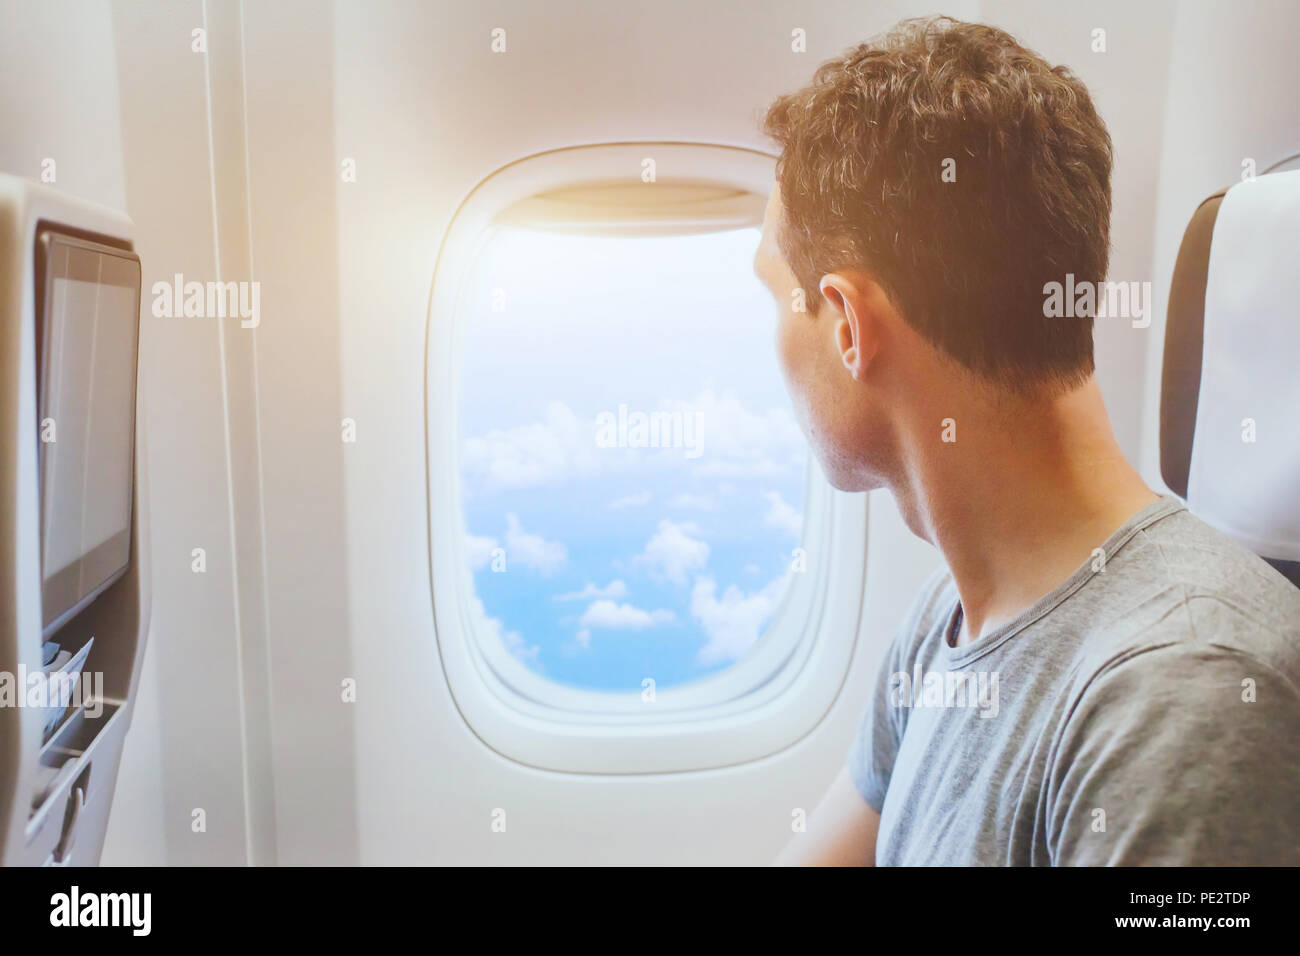 Pasajero del avión mirando en la ventana, los viajes internacionales, el hombre feliz turista disfrutar de vuelo en avión confortable Foto de stock